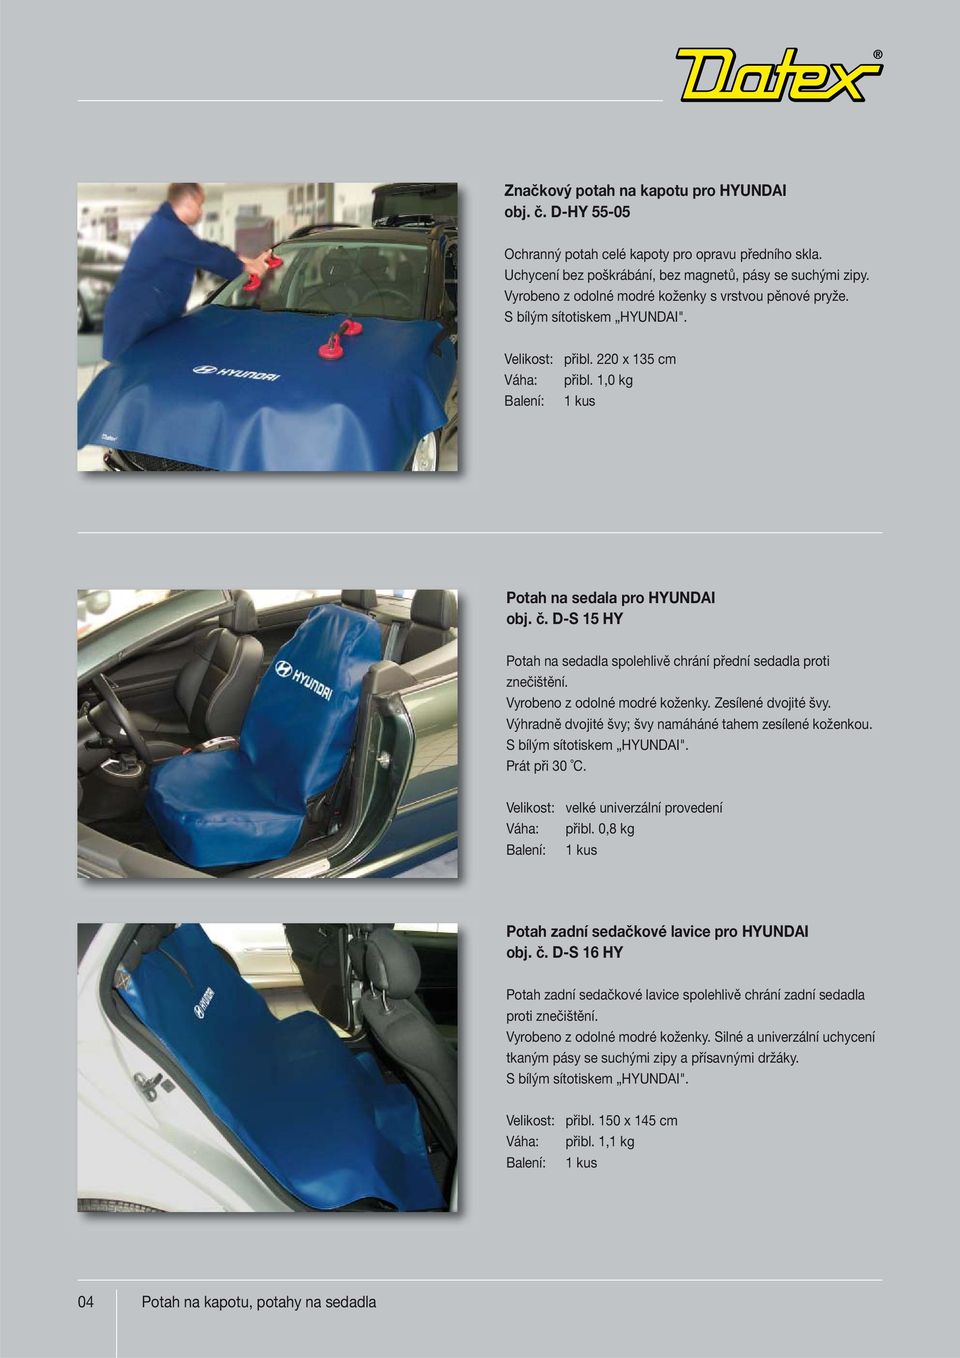 D-S 15 HY Potah na sedadla spolehlivě chrání přední sedadla proti znečištění. Vyrobeno z odolné modré koženky. Zesílené dvojité švy. Výhradně dvojité švy; švy namáháné tahem zesílené koženkou.